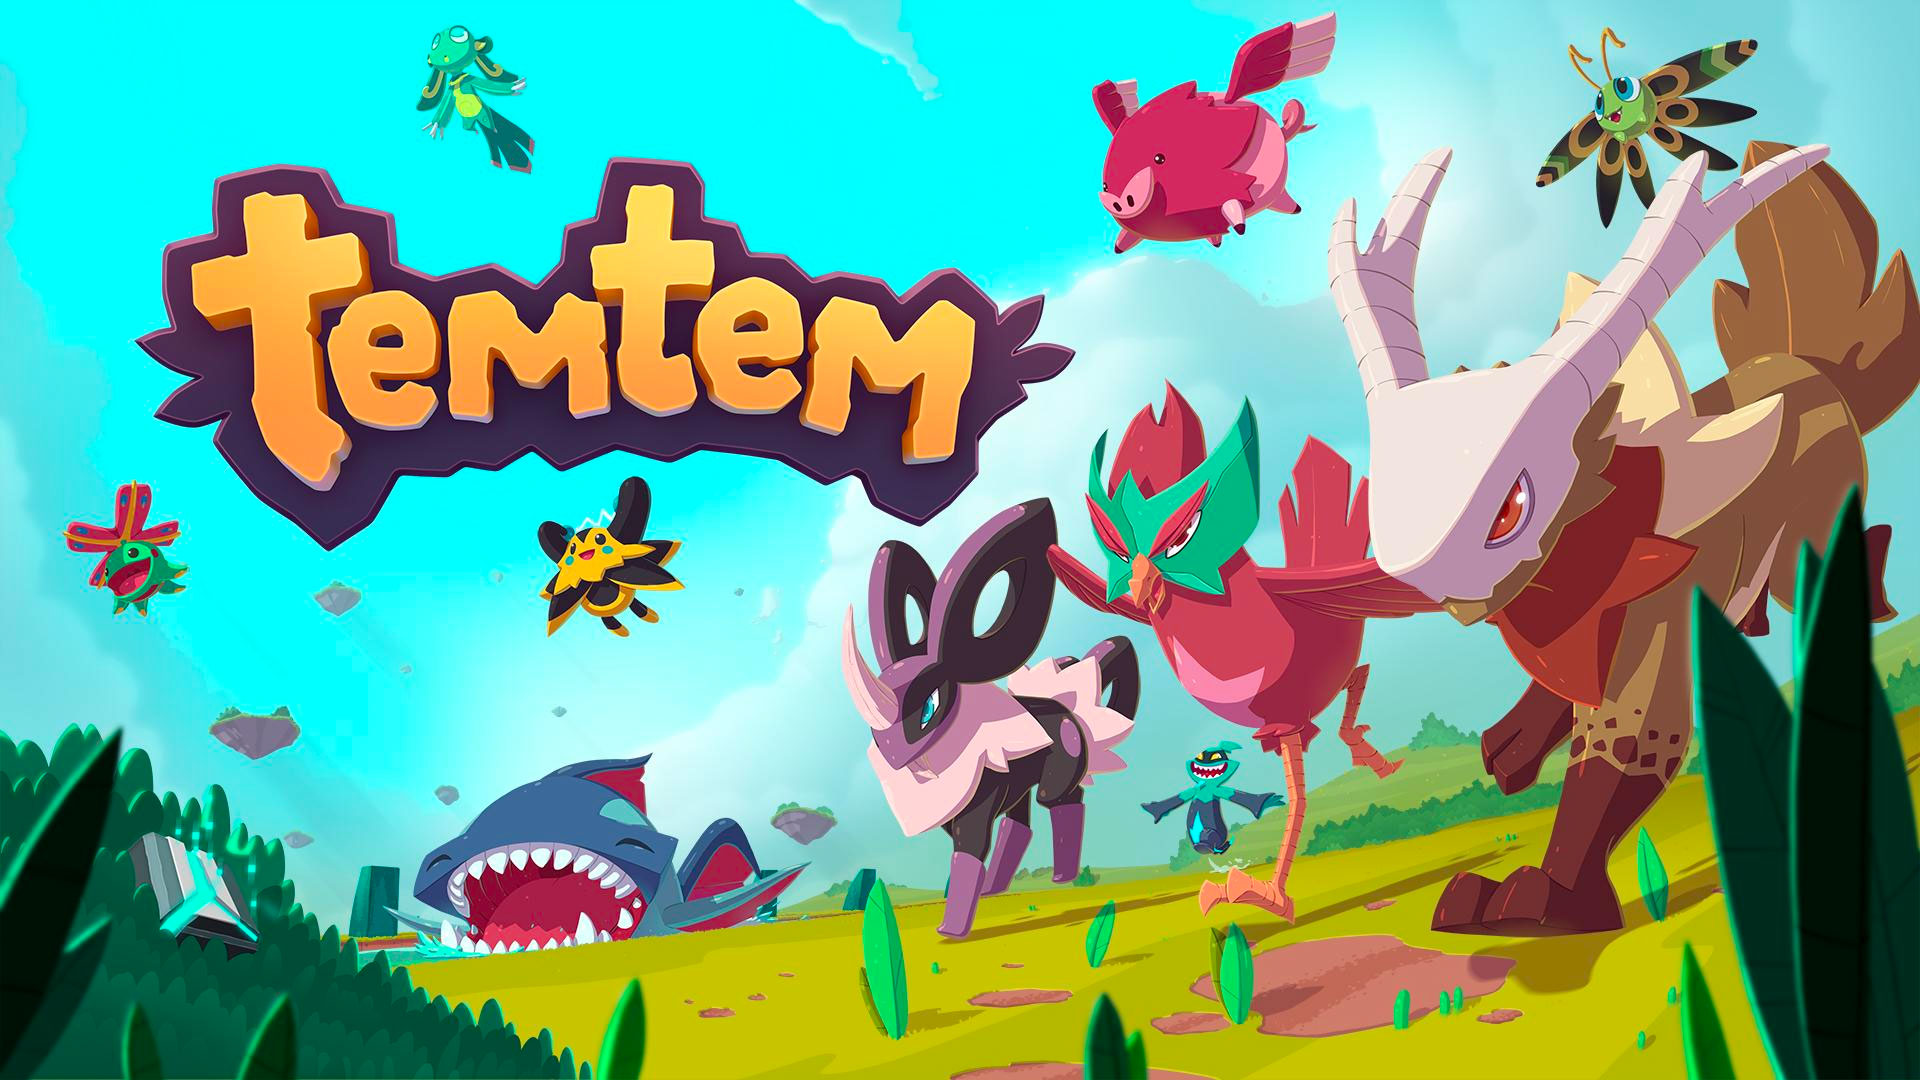 Temtem | Humble Games and Crema